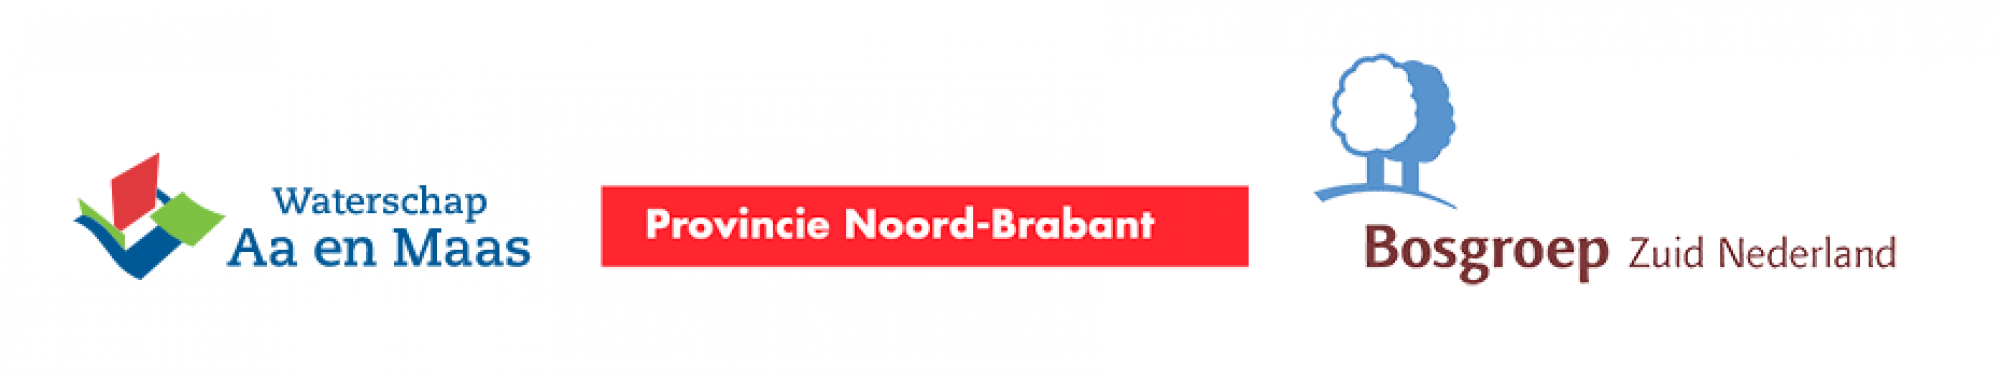 logo's Wijboschbroek.png